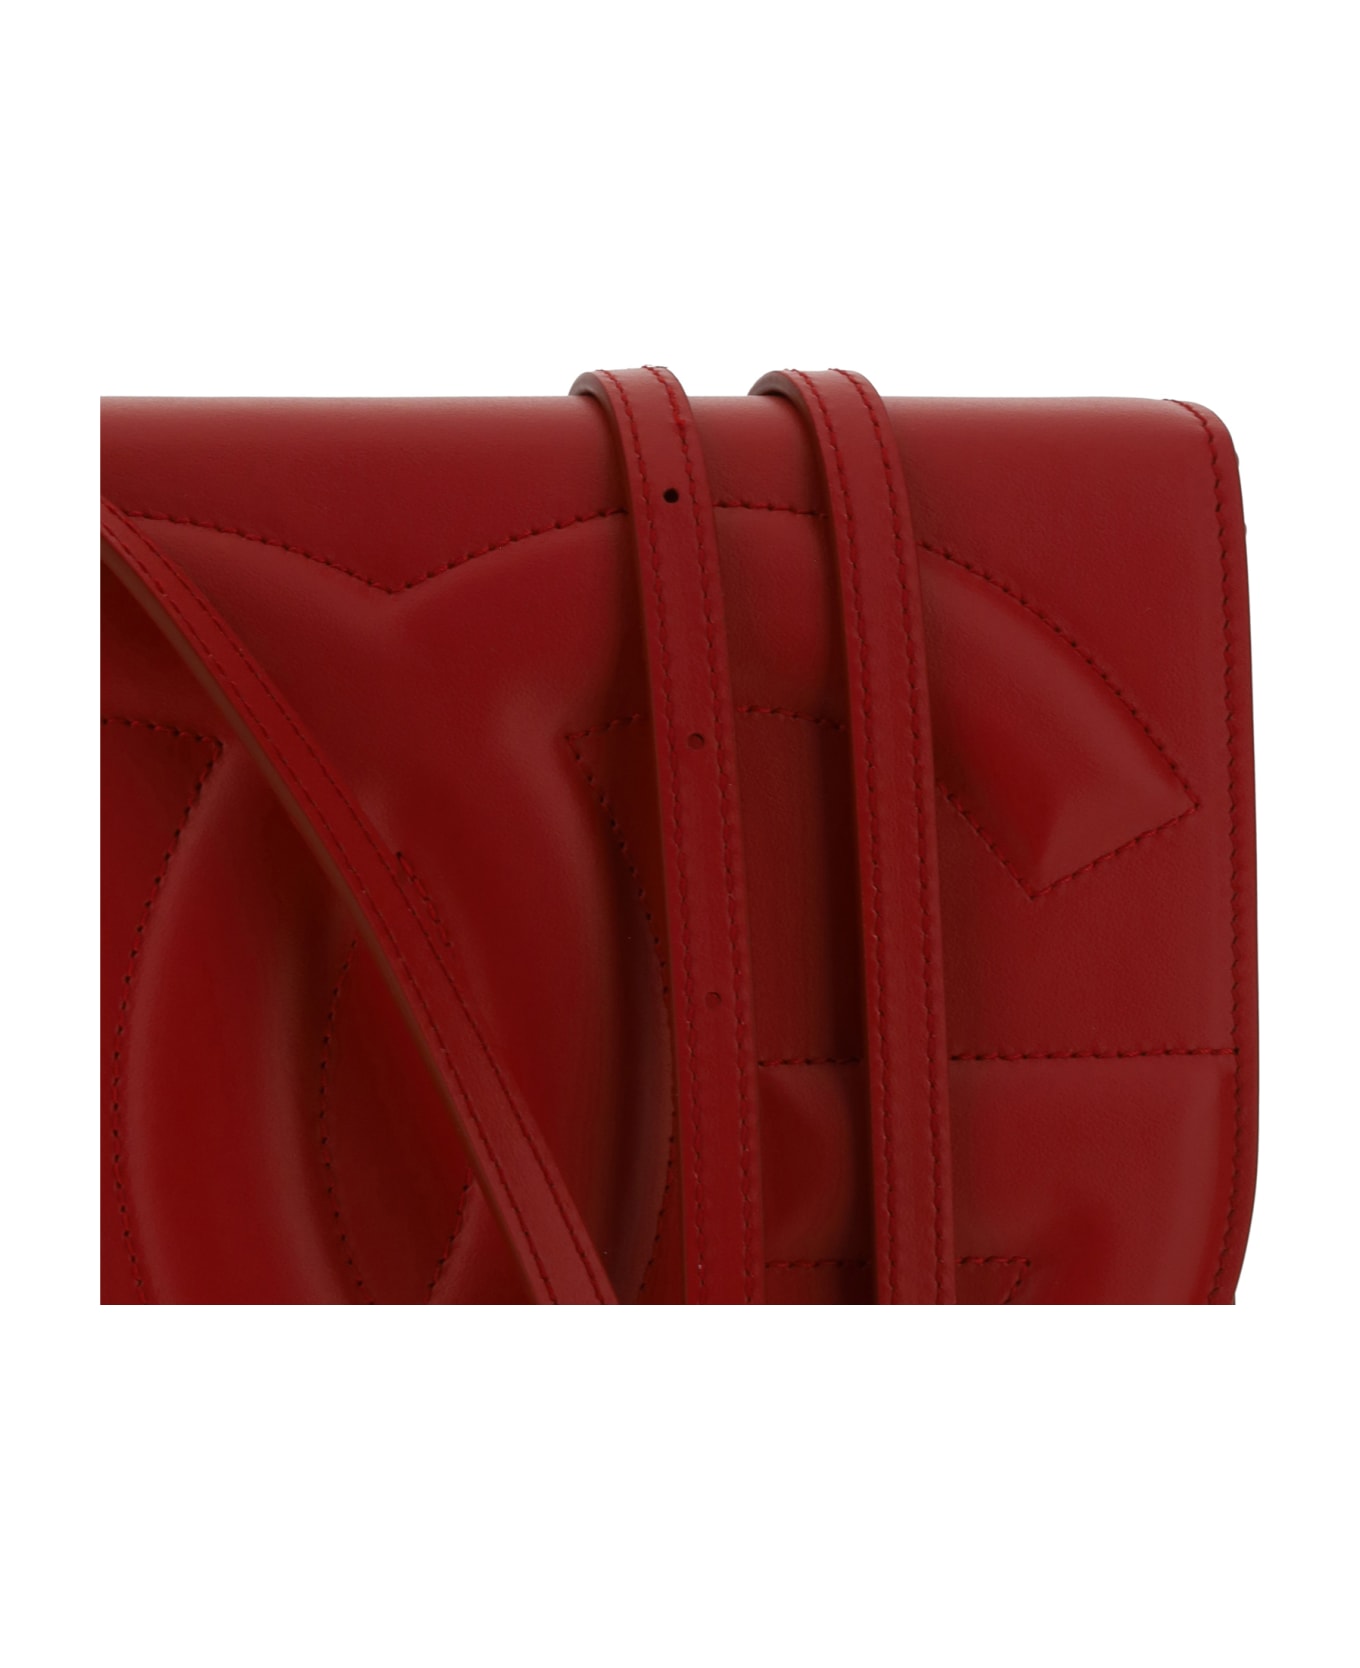 Dolce & Gabbana Shoulder Bag - Rosso